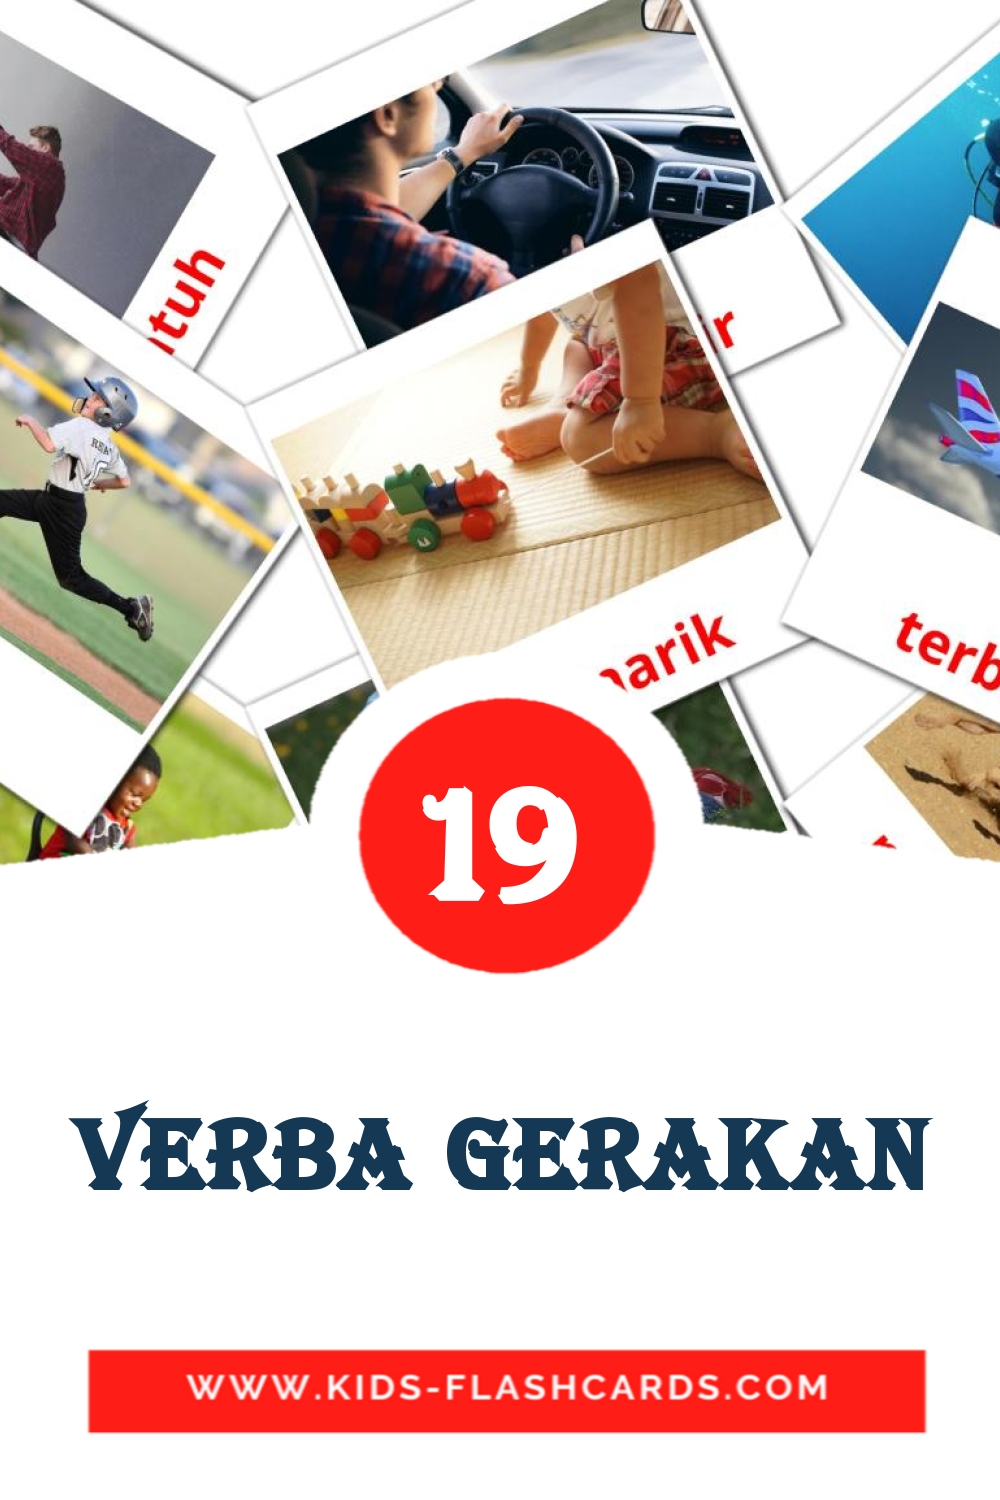 Verba gerakan на индонезийском для Детского Сада (22 карточки)